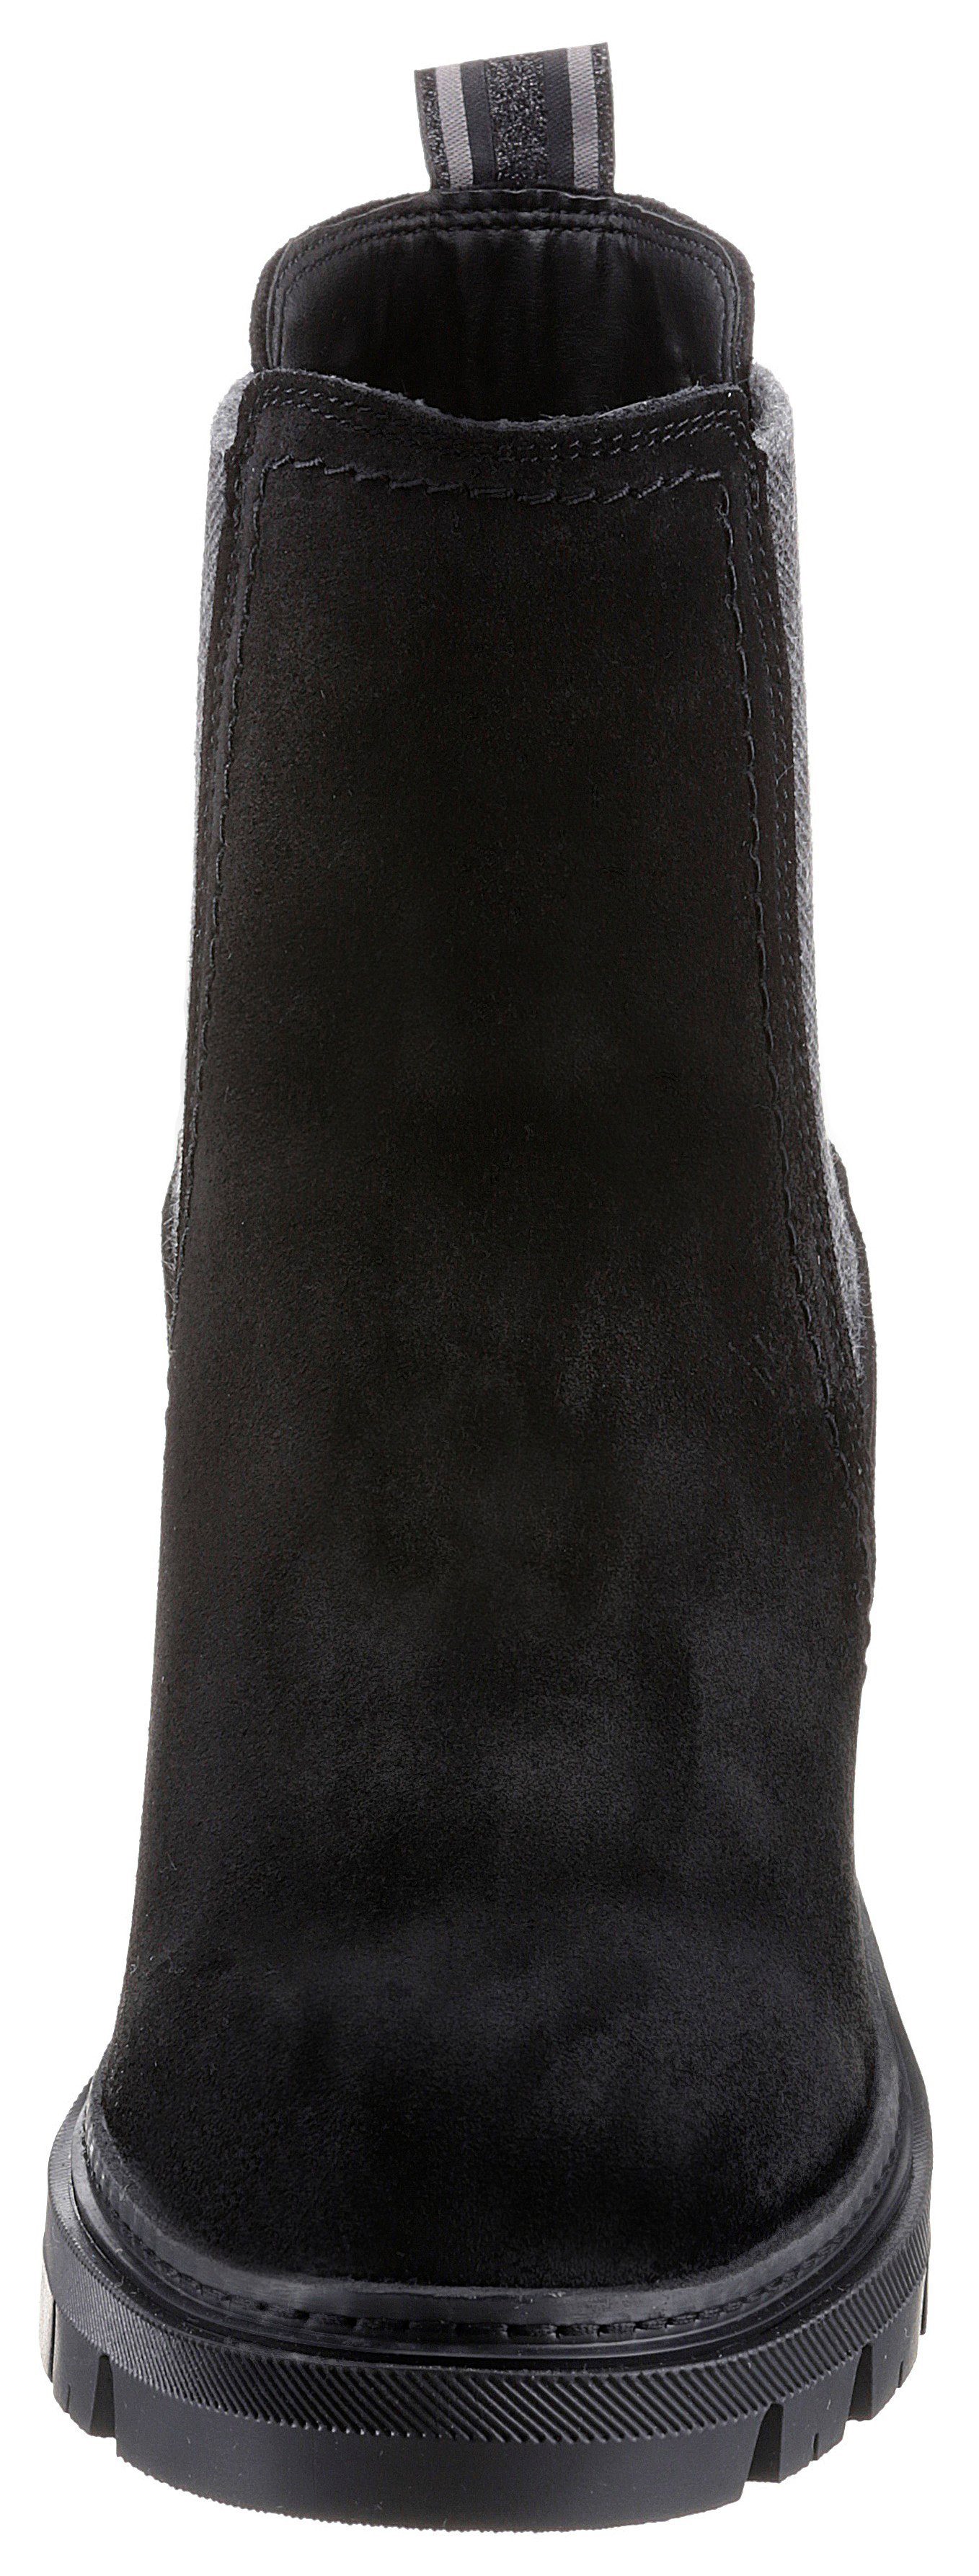 Stiefelette schwarz mit Streifenbesatz trendigen Tamaris Panna